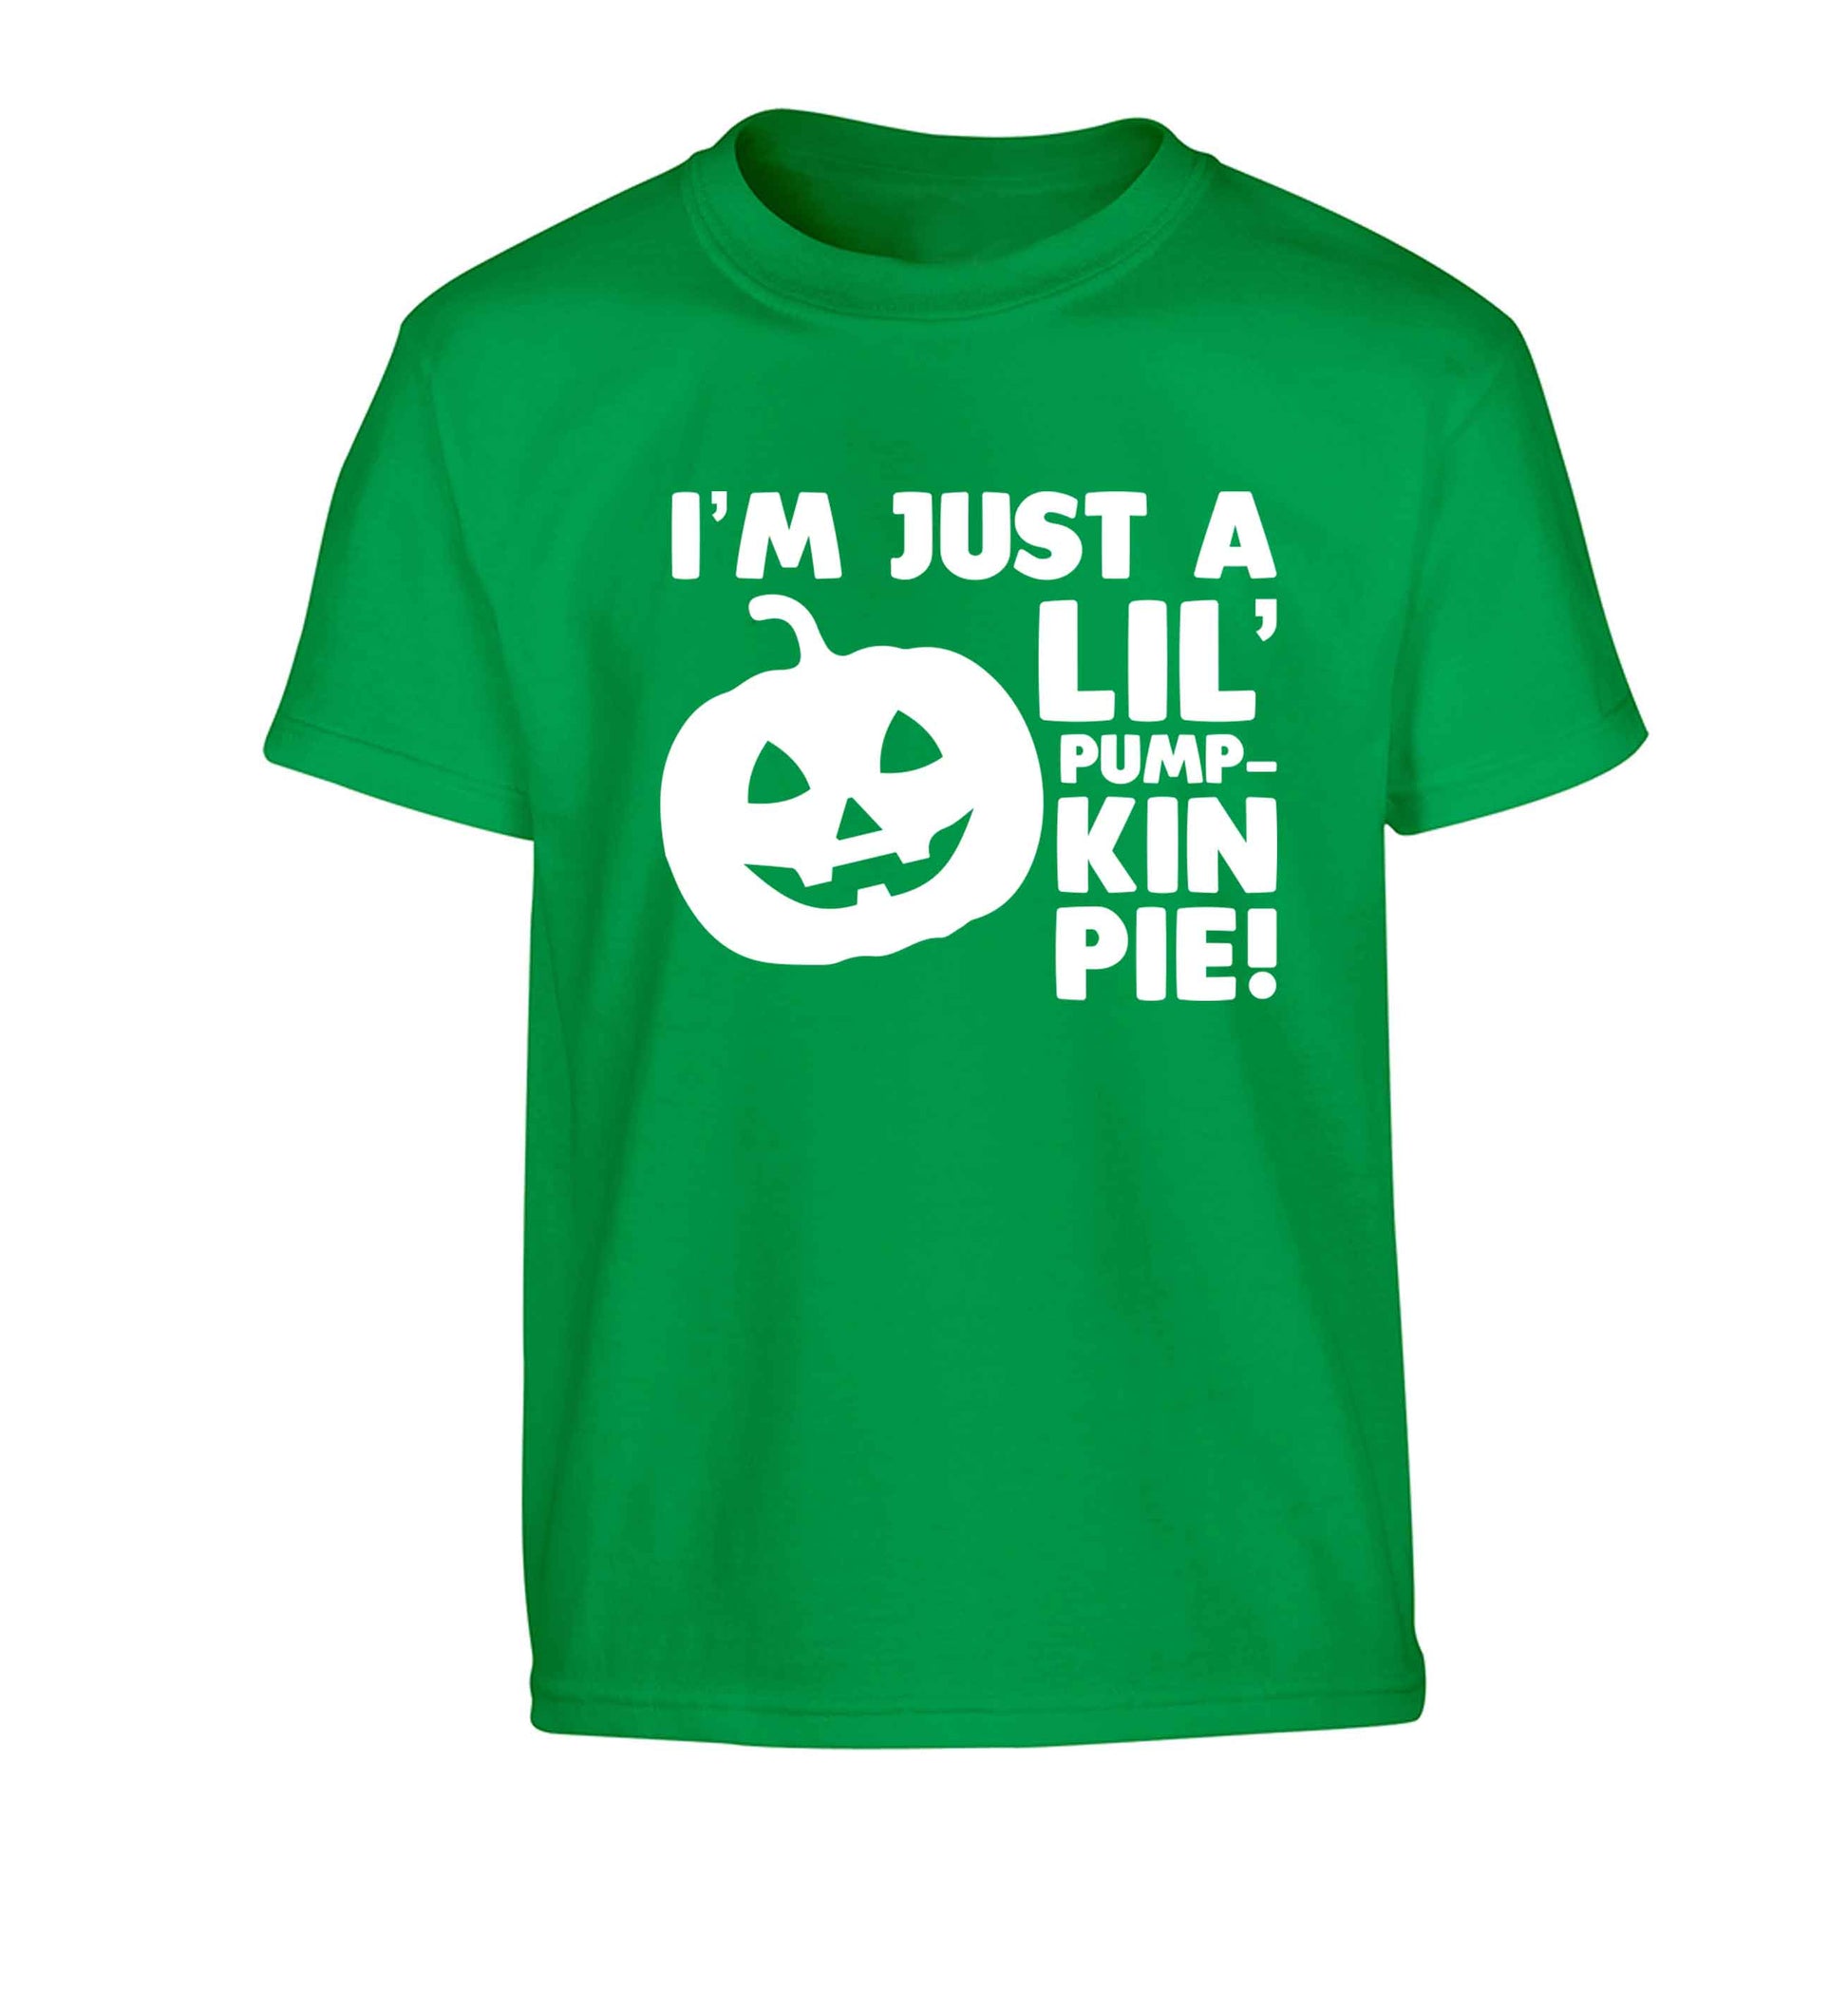 I'm just a lil' pumpkin pie Children's green Tshirt 12-13 Years